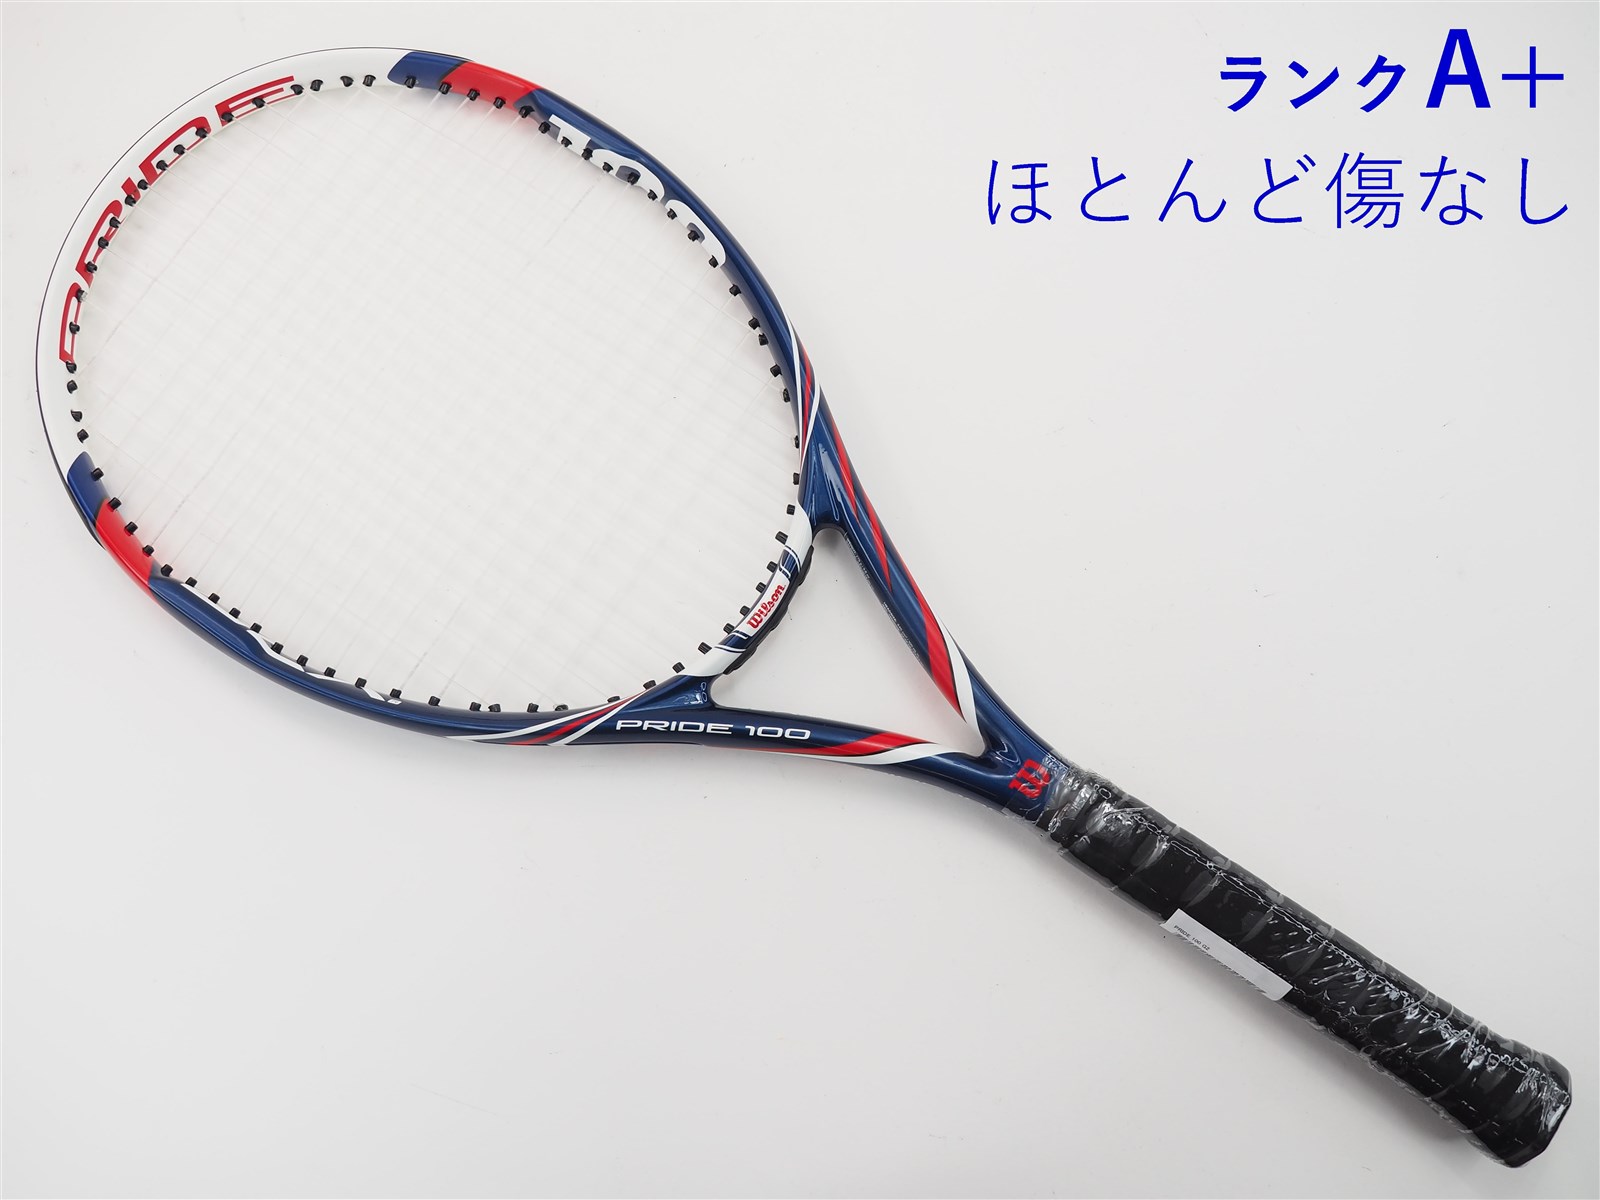 テニスラケット ウィルソン プライド 100 (G2)WILSON PRIDE 100-